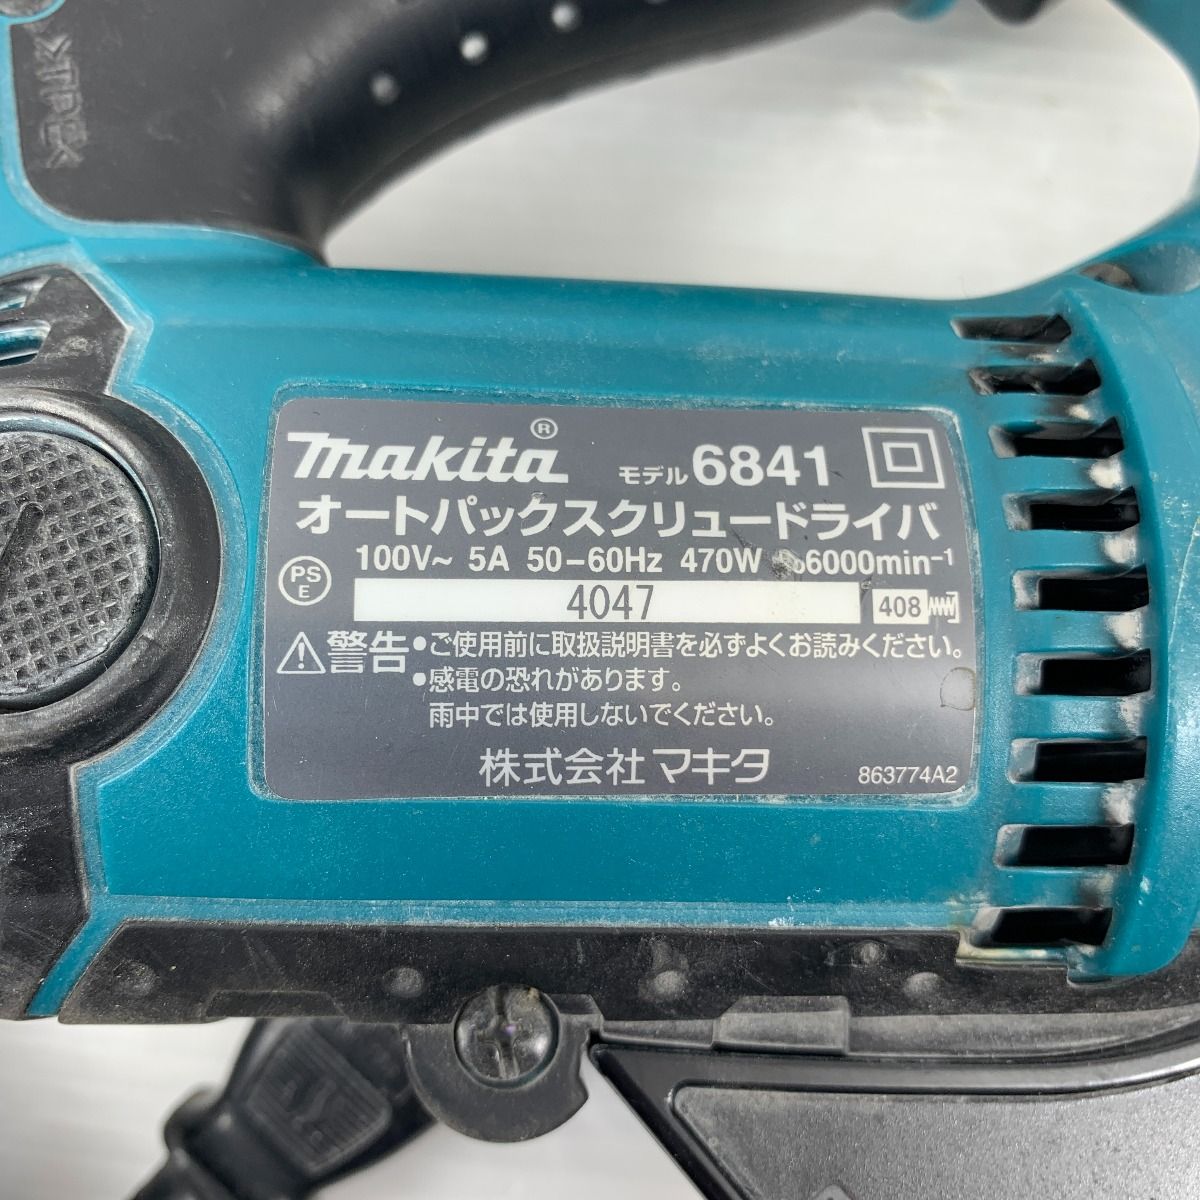 ◇◇MAKITA マキタ 電動工具 スクリュードライバー コード式 100v 4047 6841 グリーン - メルカリ